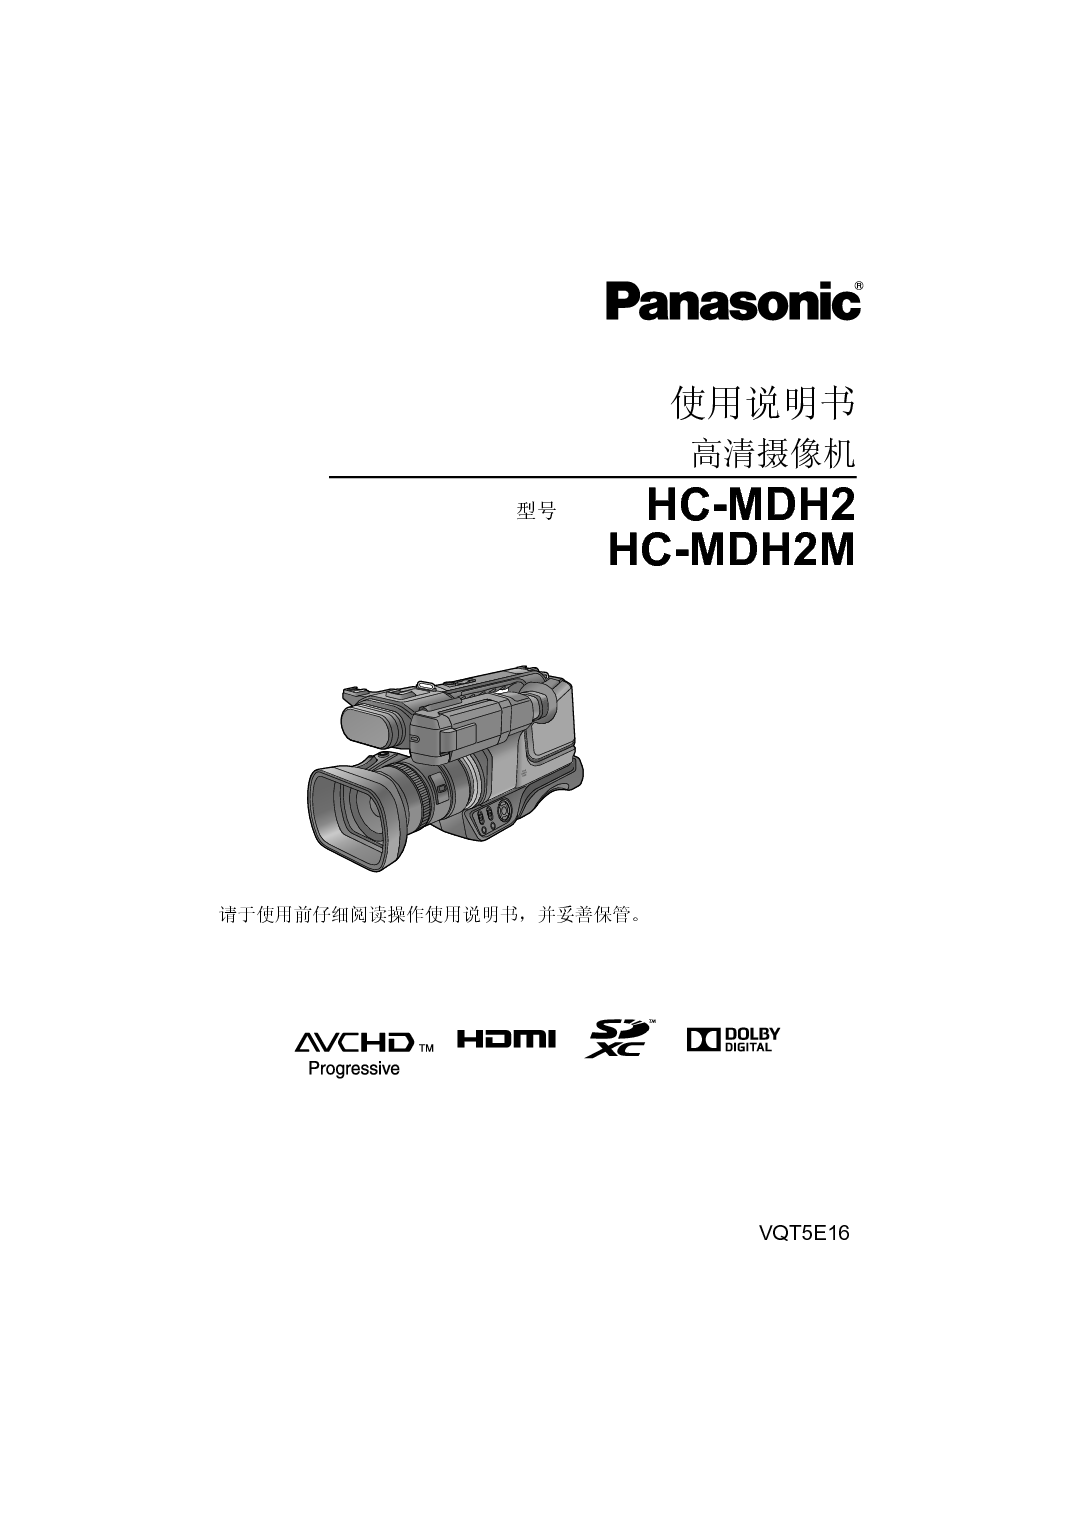 松下 Panasonic HC-MDH2 使用说明书 封面